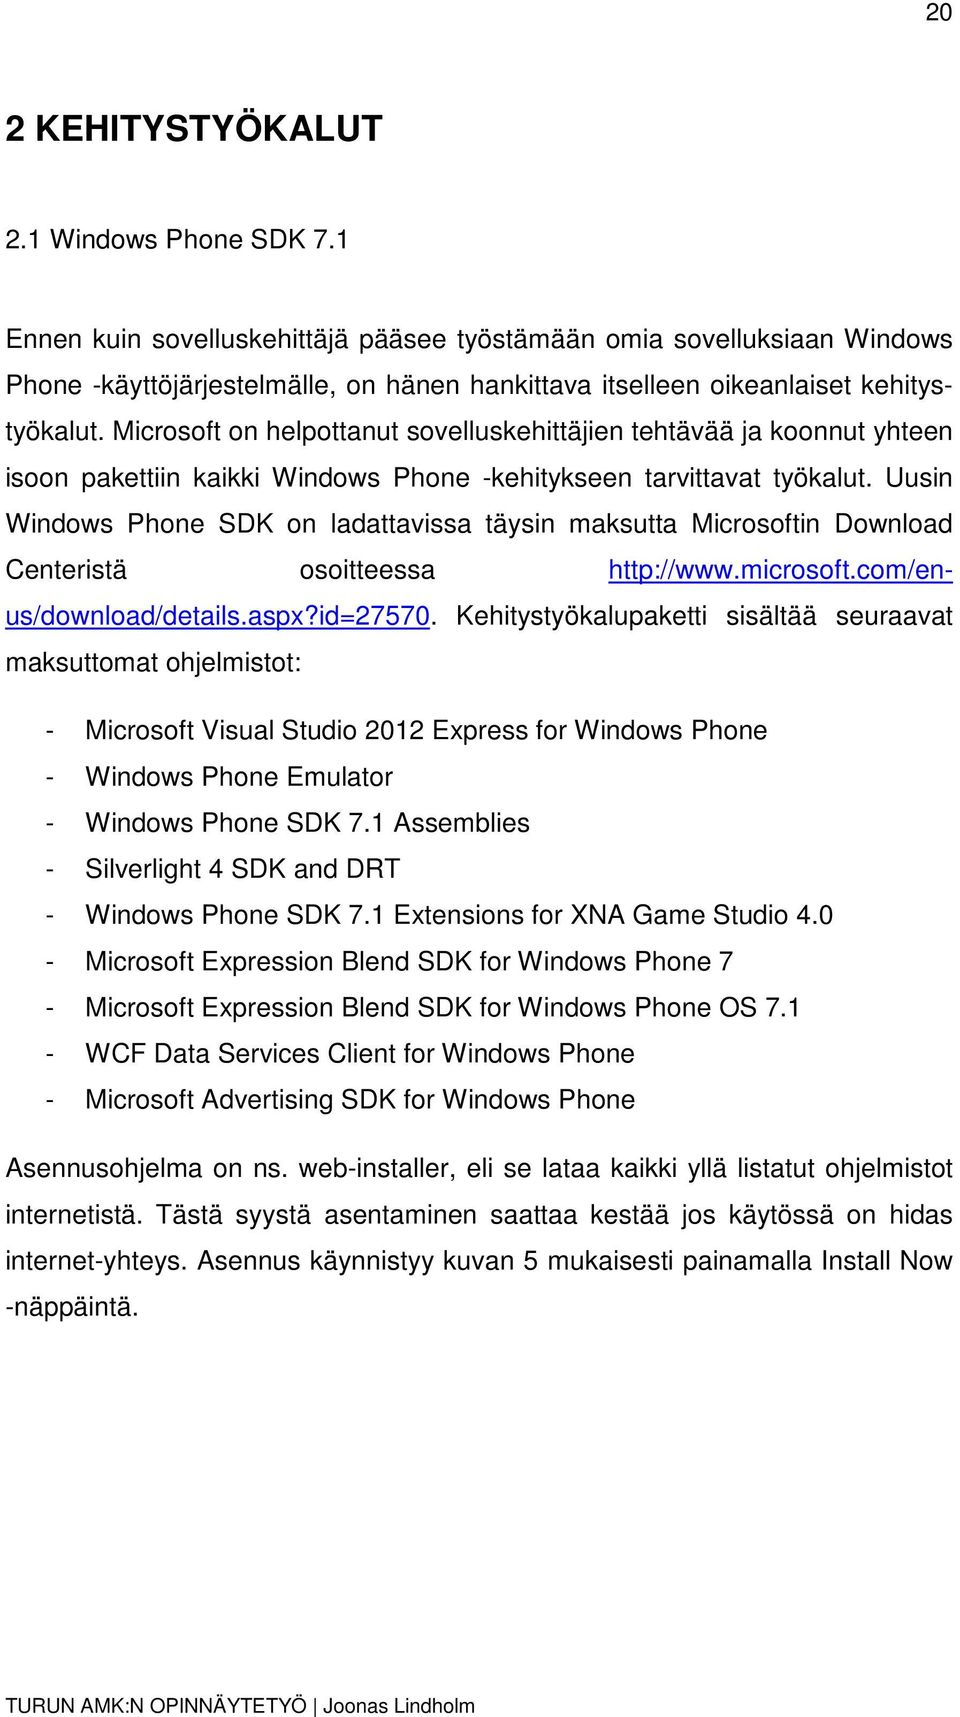 Microsoft on helpottanut sovelluskehittäjien tehtävää ja koonnut yhteen isoon pakettiin kaikki Windows Phone -kehitykseen tarvittavat työkalut.